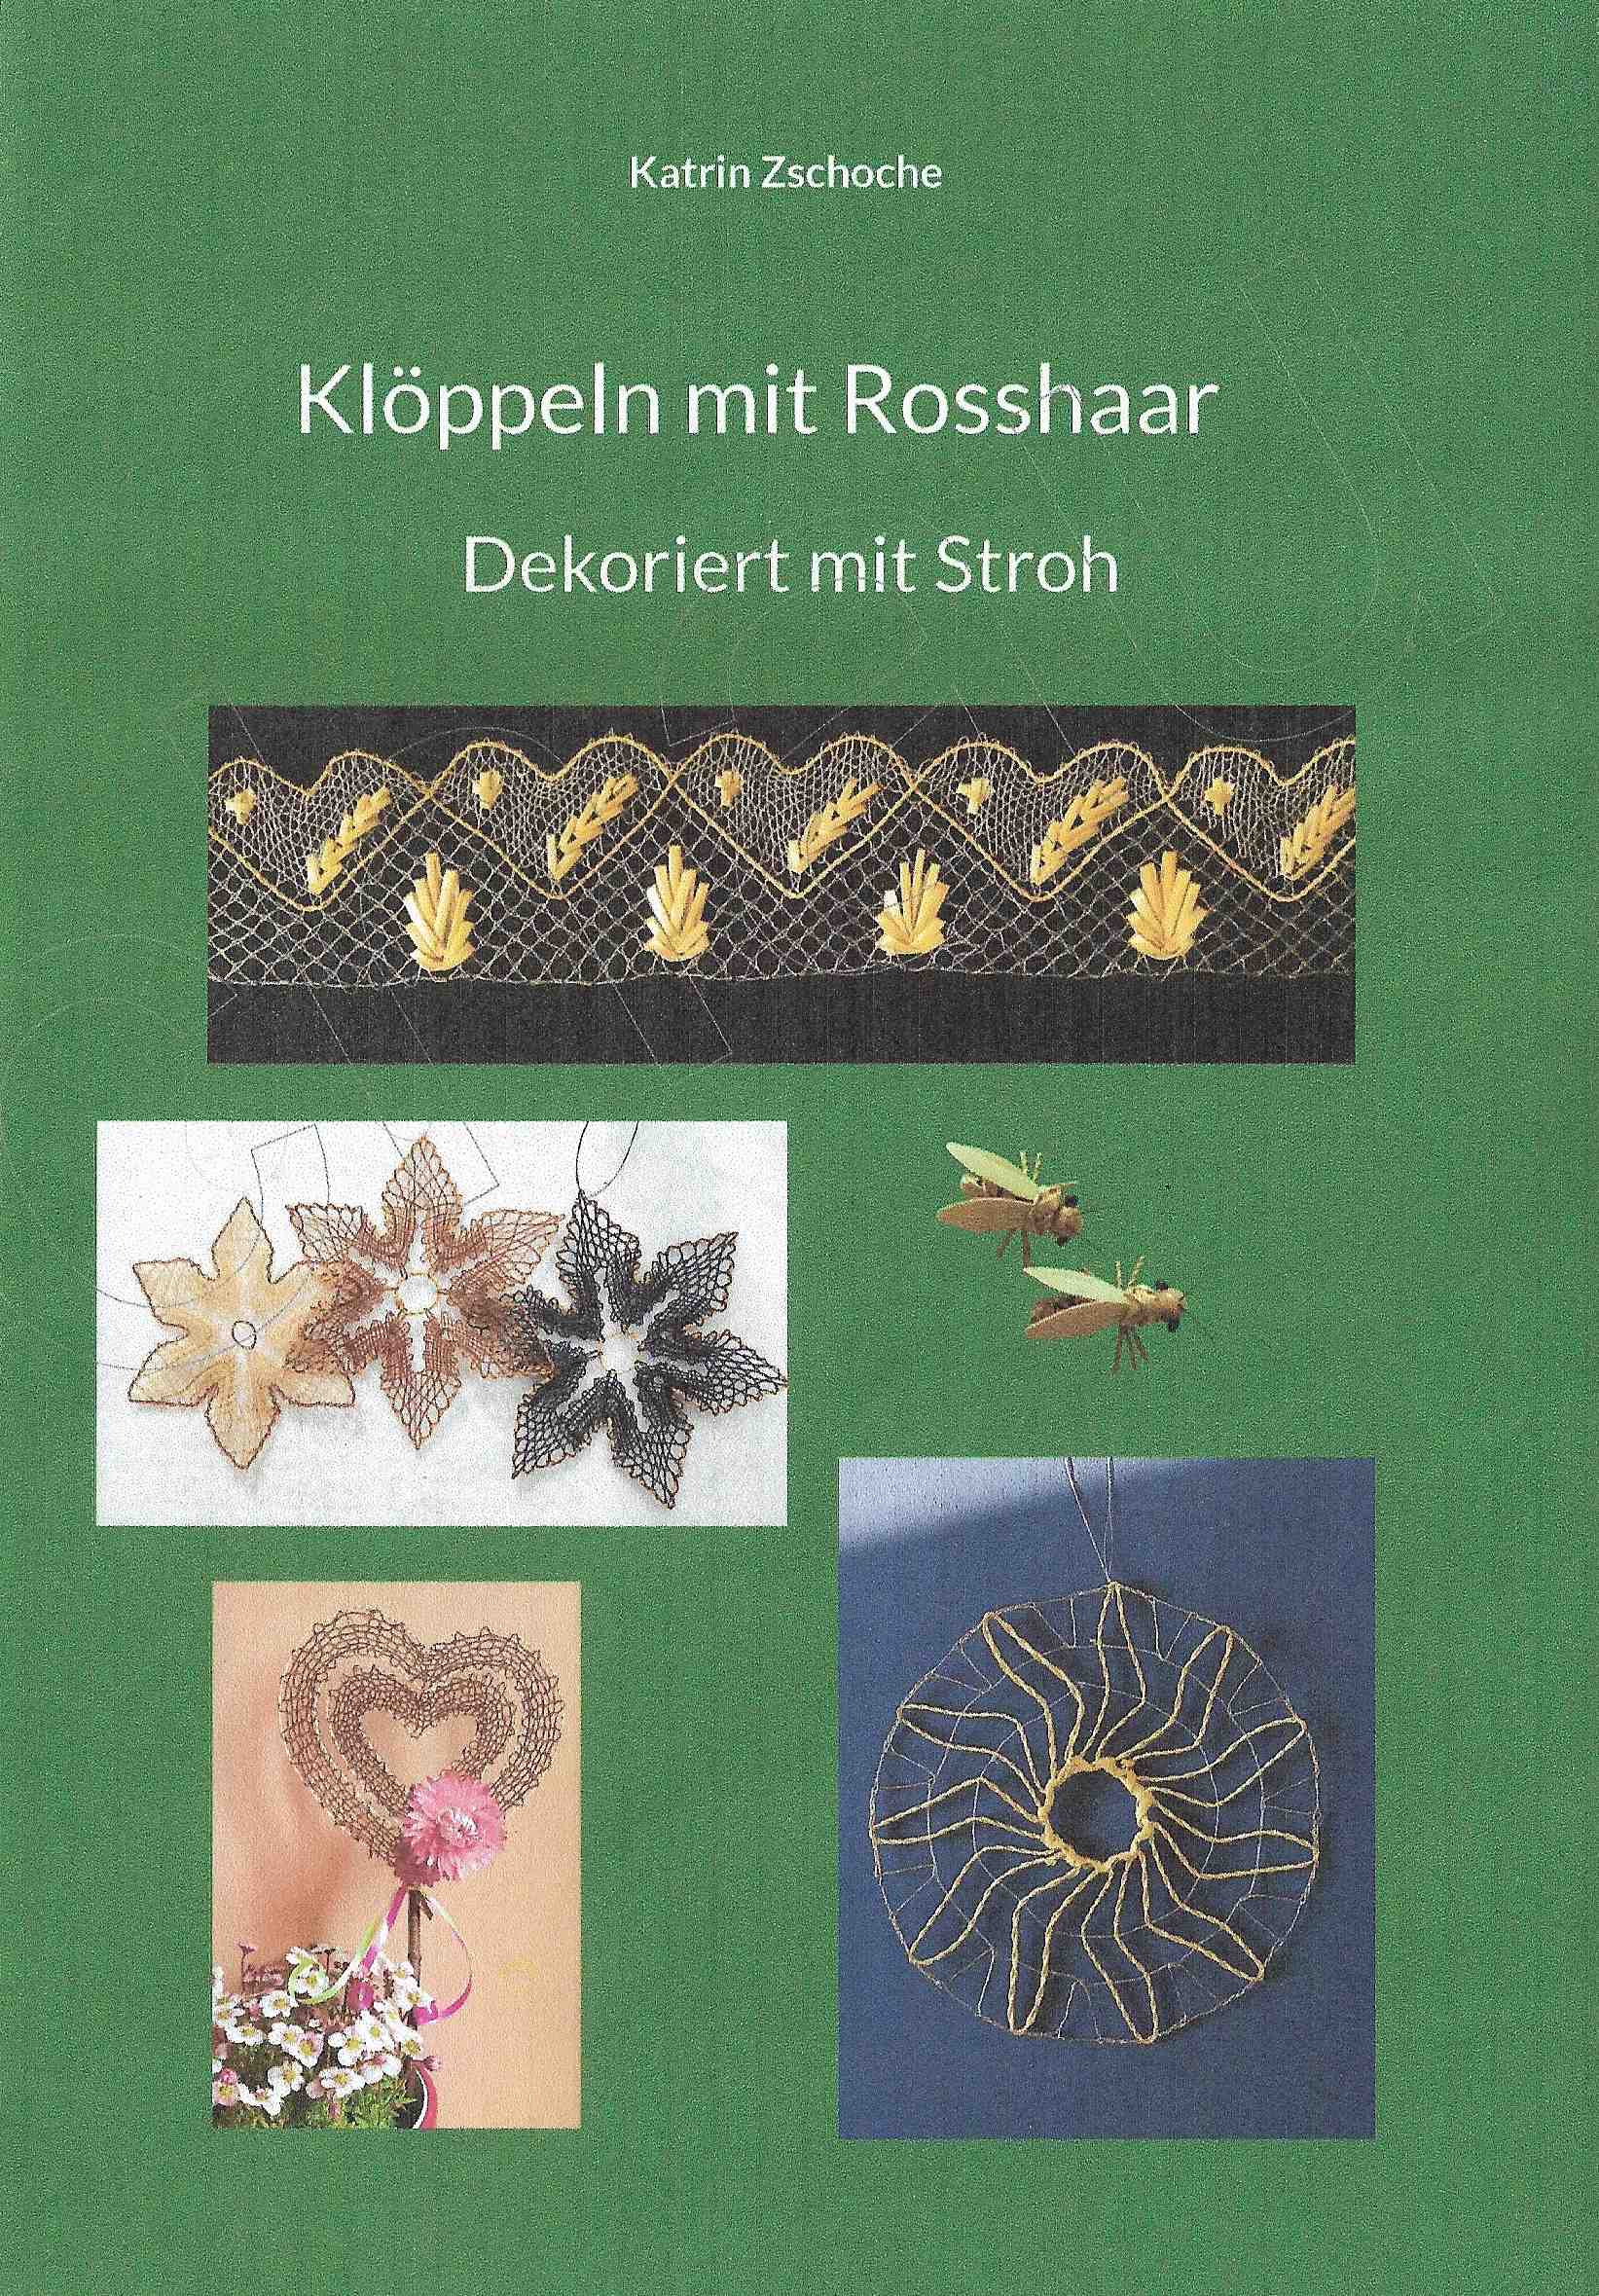 Klppeln mit Rosshaar - Dekoriert mit Stroh by Katrin Zschoche